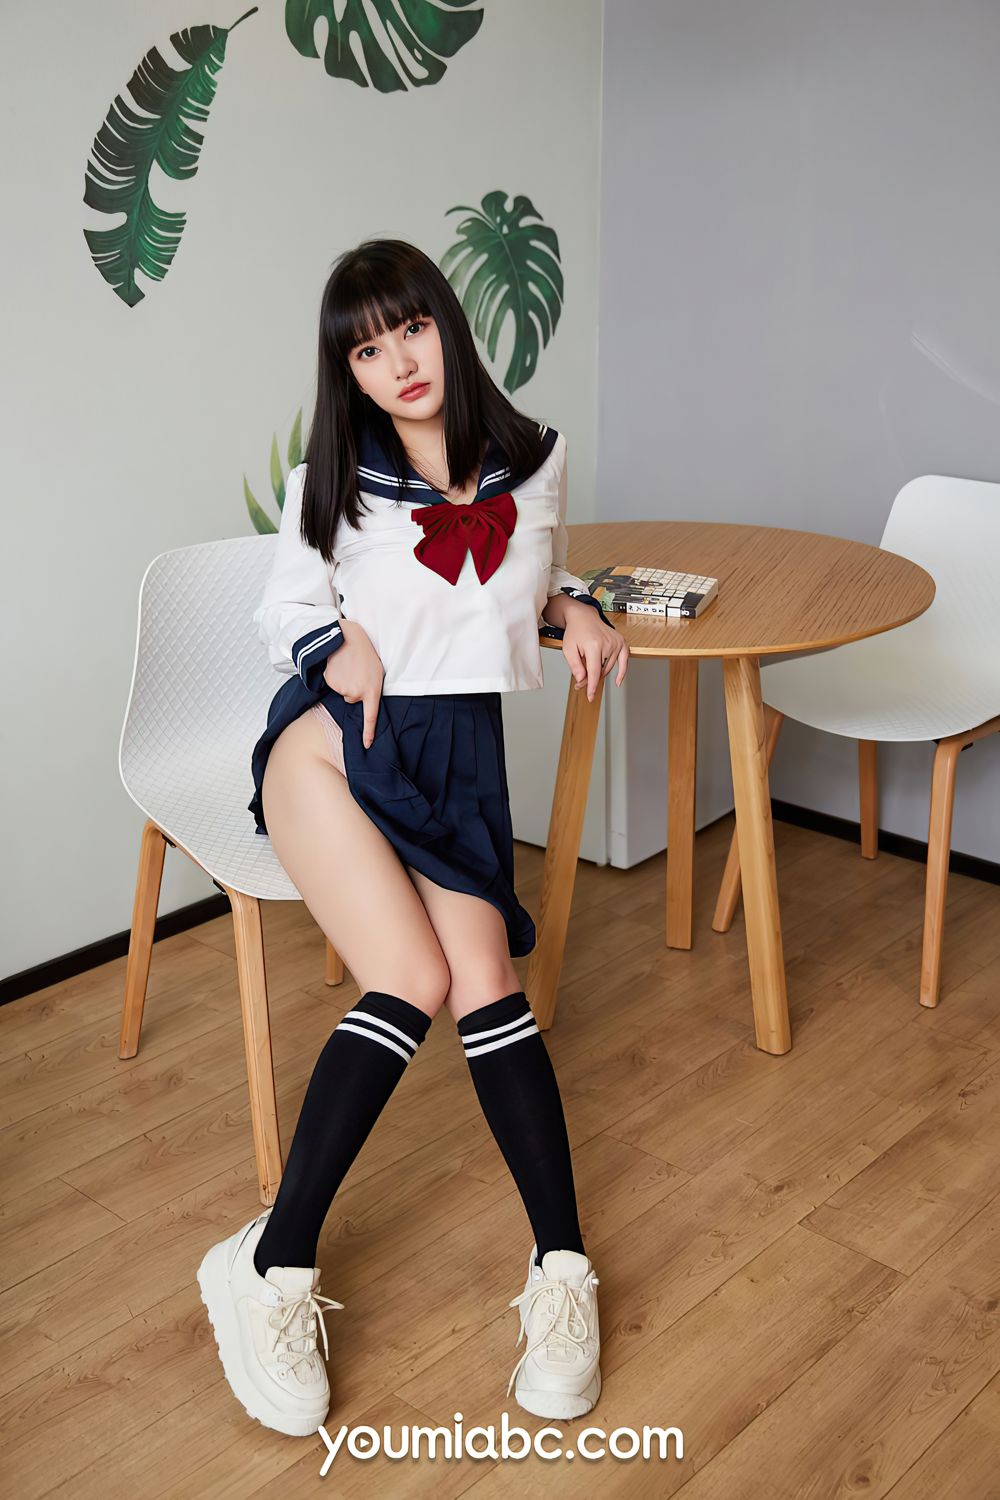 美女模特小尤奈长筒袜学生妹装扮JK制服系列写真